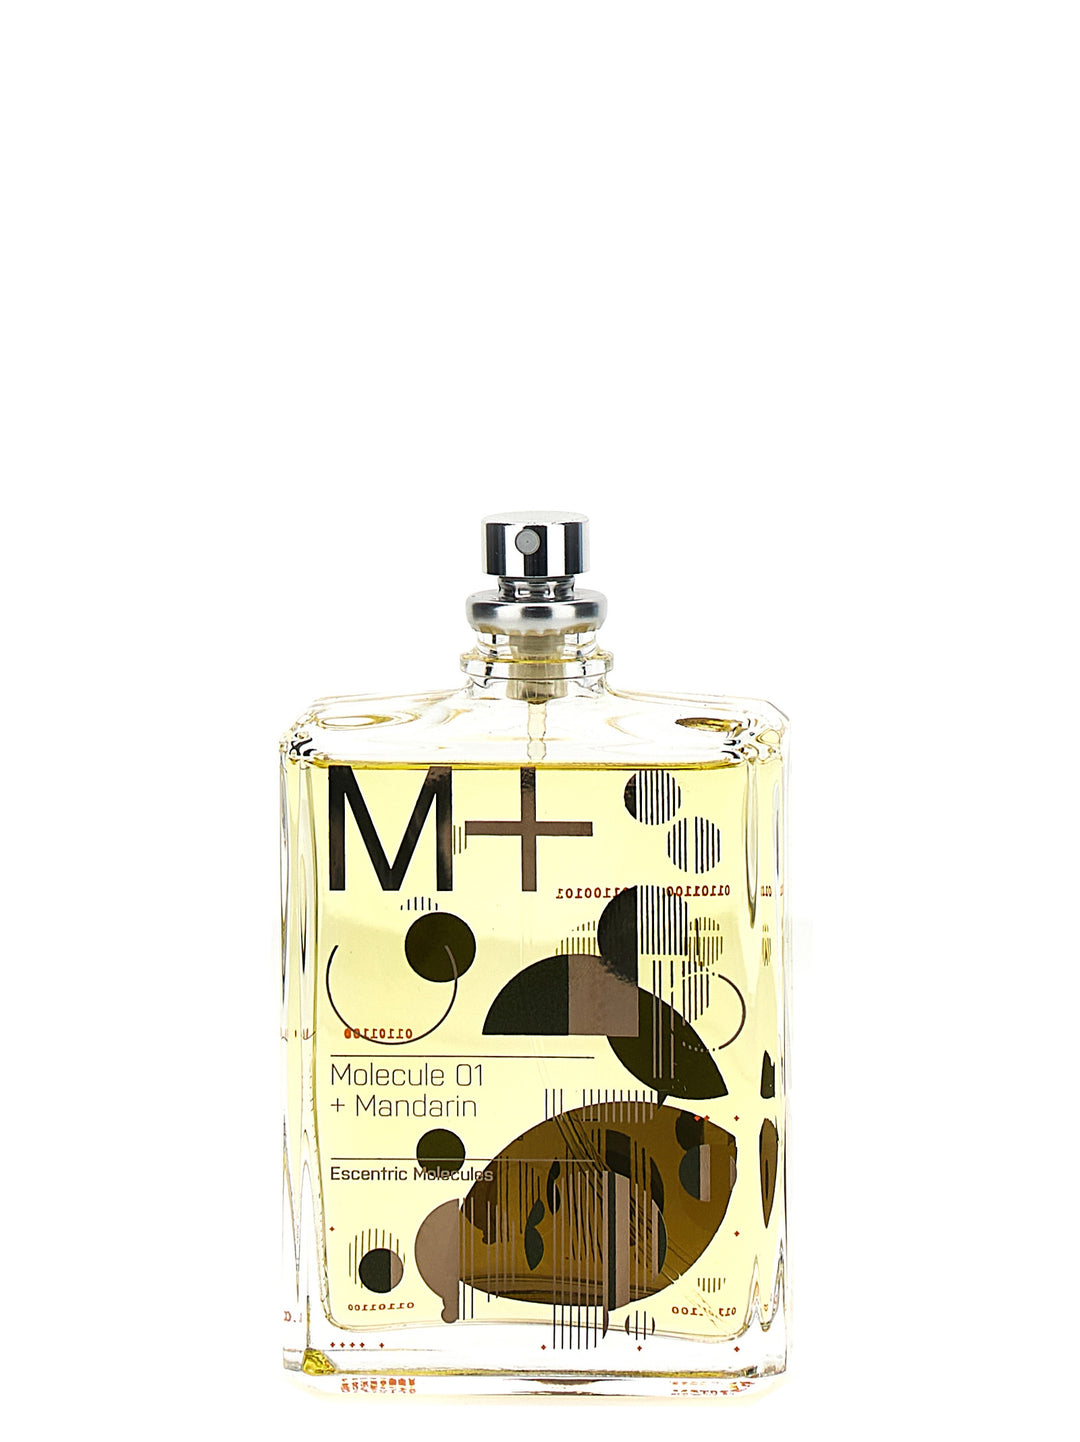 Molecule 01 + Mandarin Perfumes Multicolor